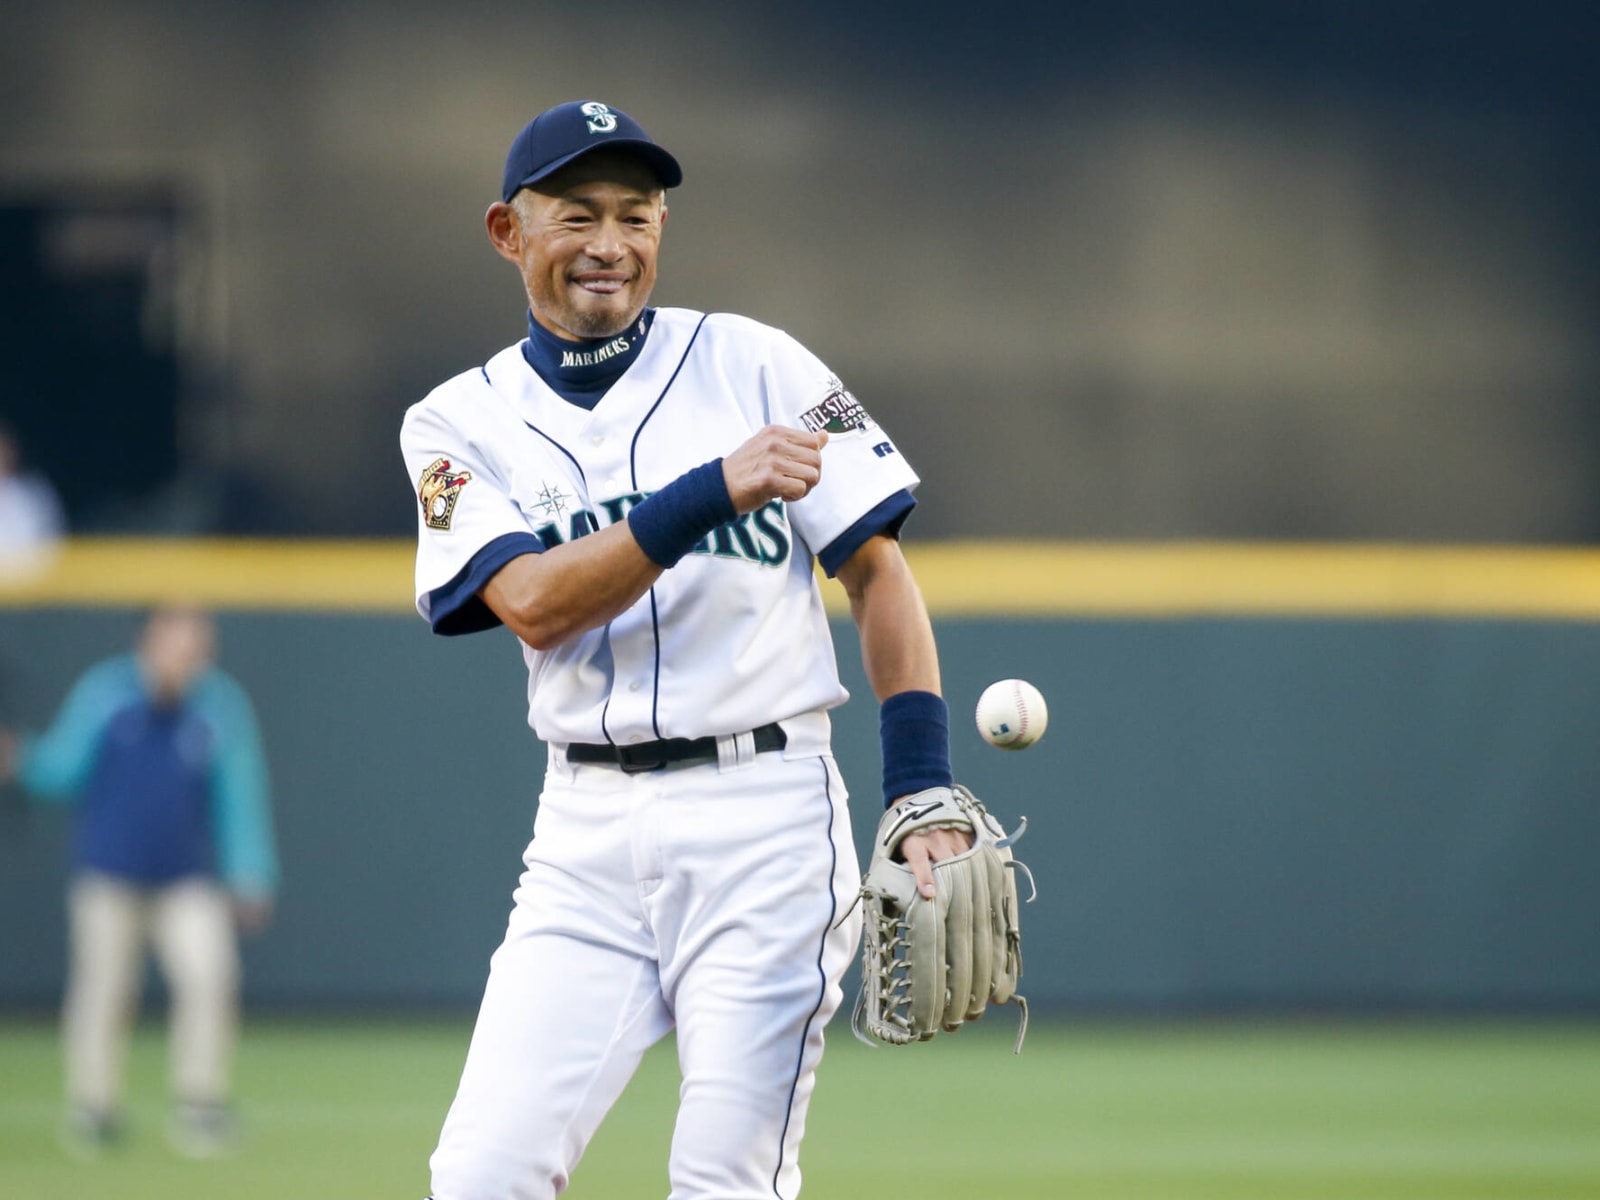 Seattle Mariners legend Ichiro Suzuki reunites with 'Ichiro Girl' during  first pitch - ESPN